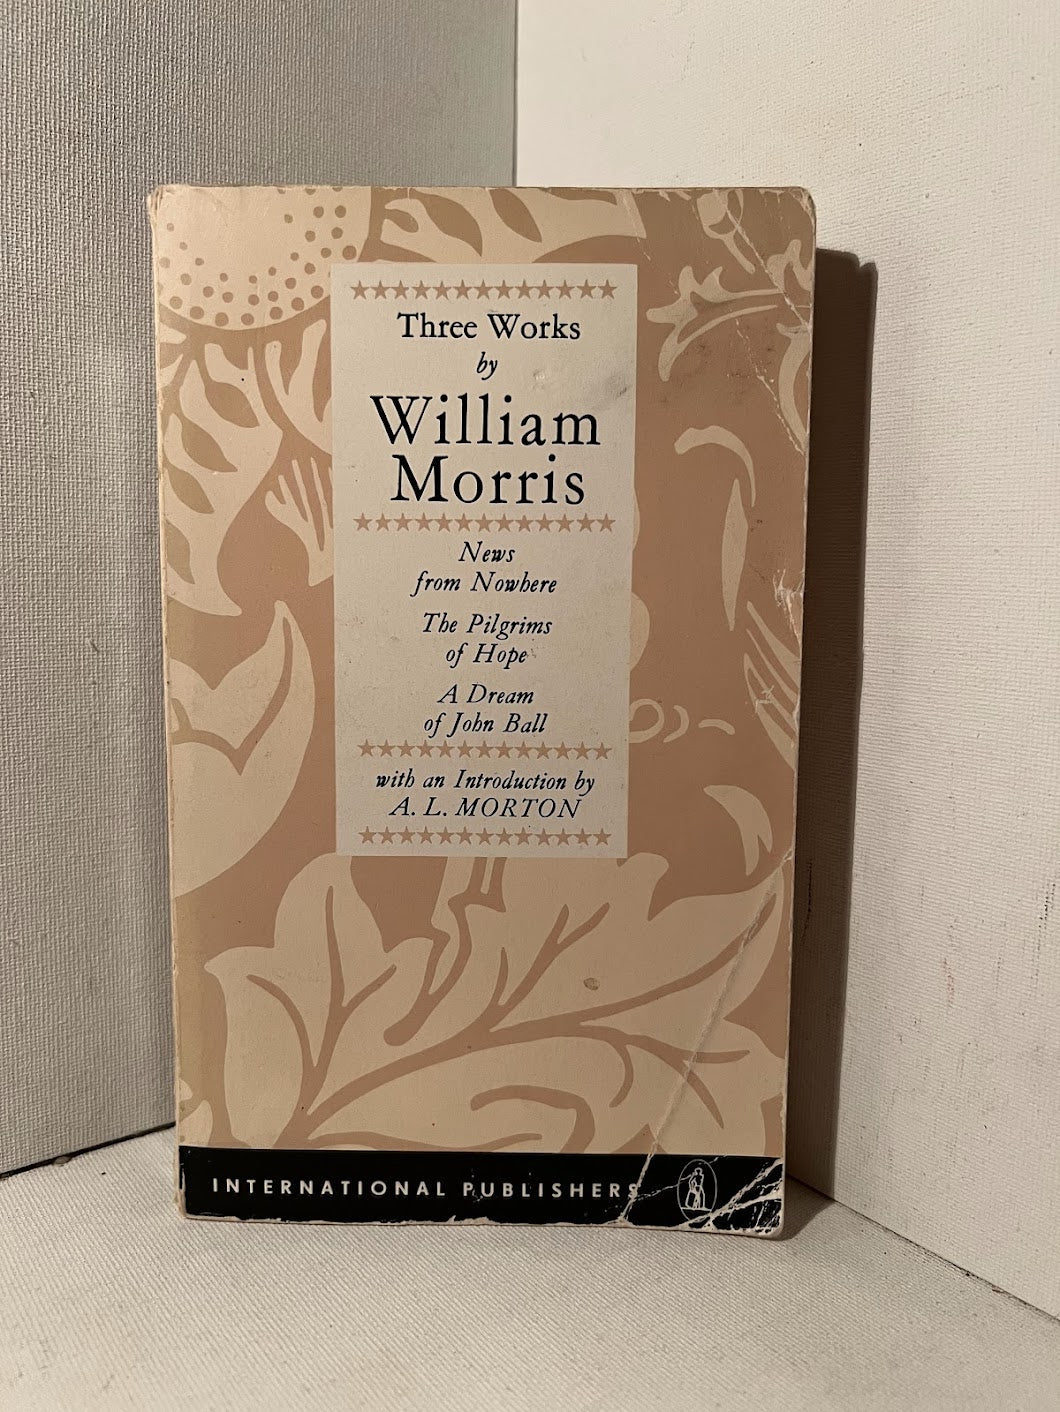 2 books by William Morris